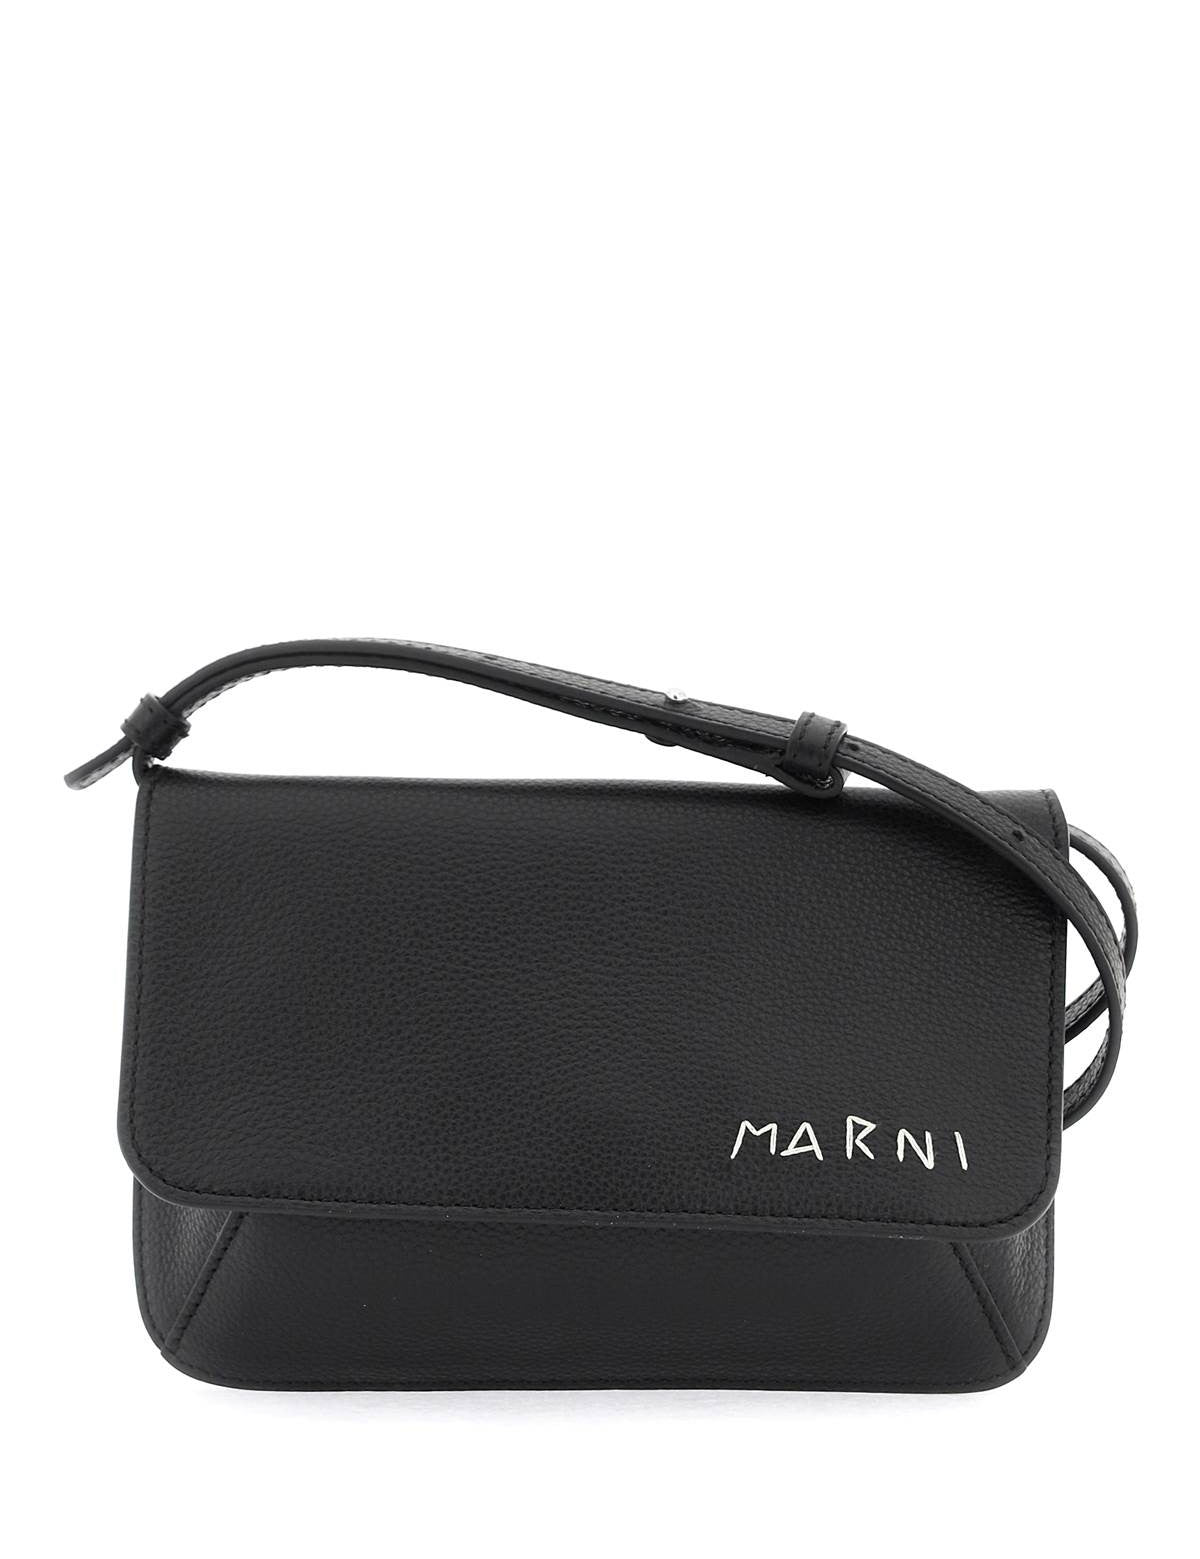 marni-flap-trunk-shoulder-bag-with_263008a0-ca60-437e-a392-03197382cd2f.jpg